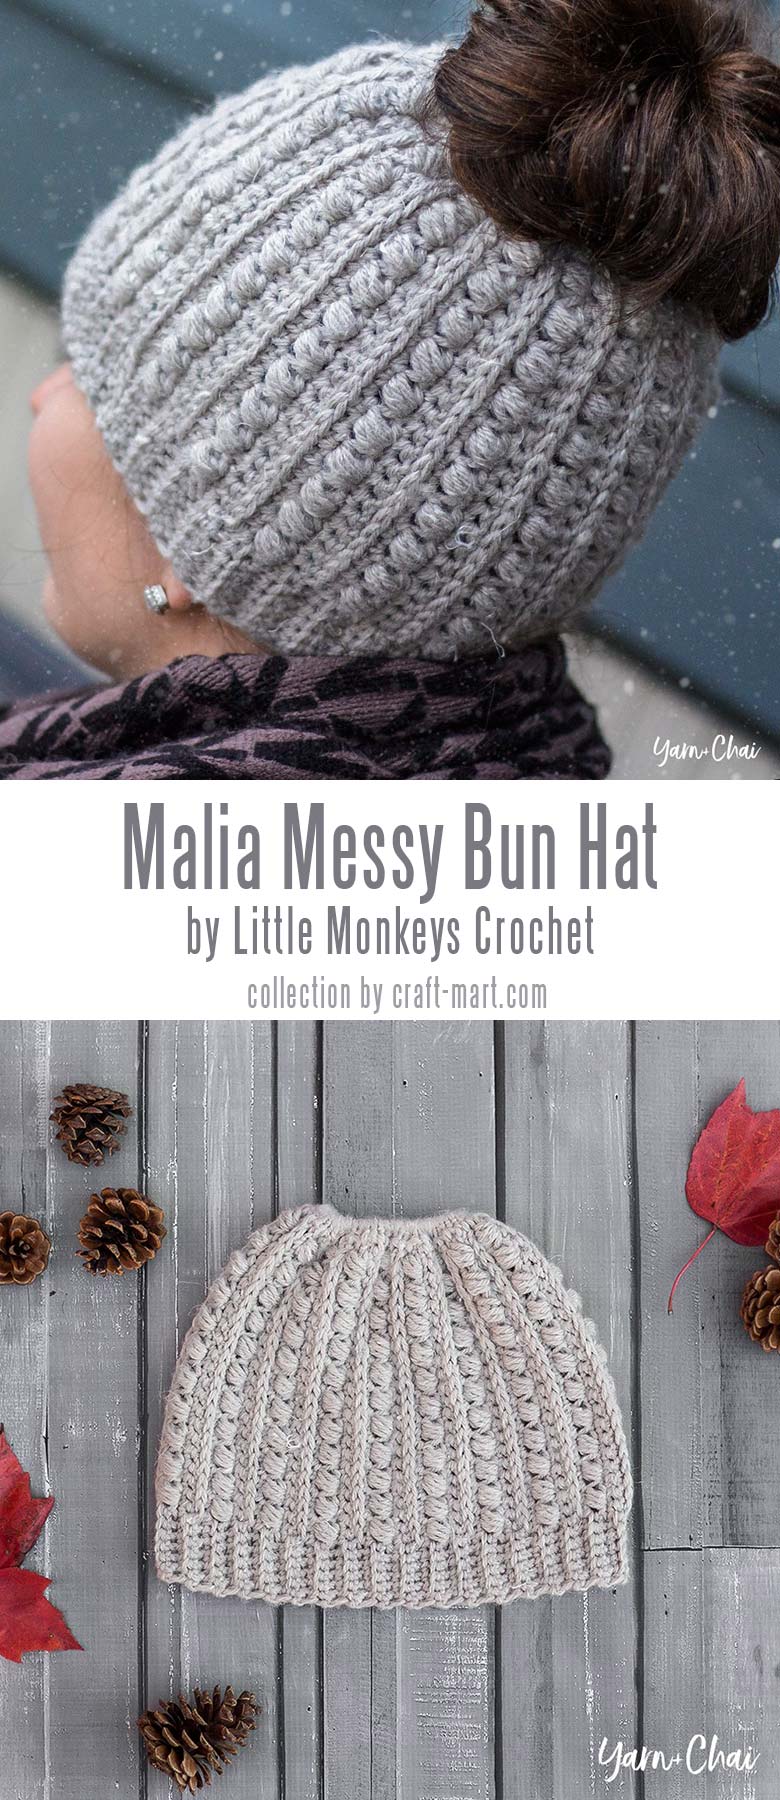 Crochet Messy Bun Beanie "Malia" by Little Monkeys Crochet